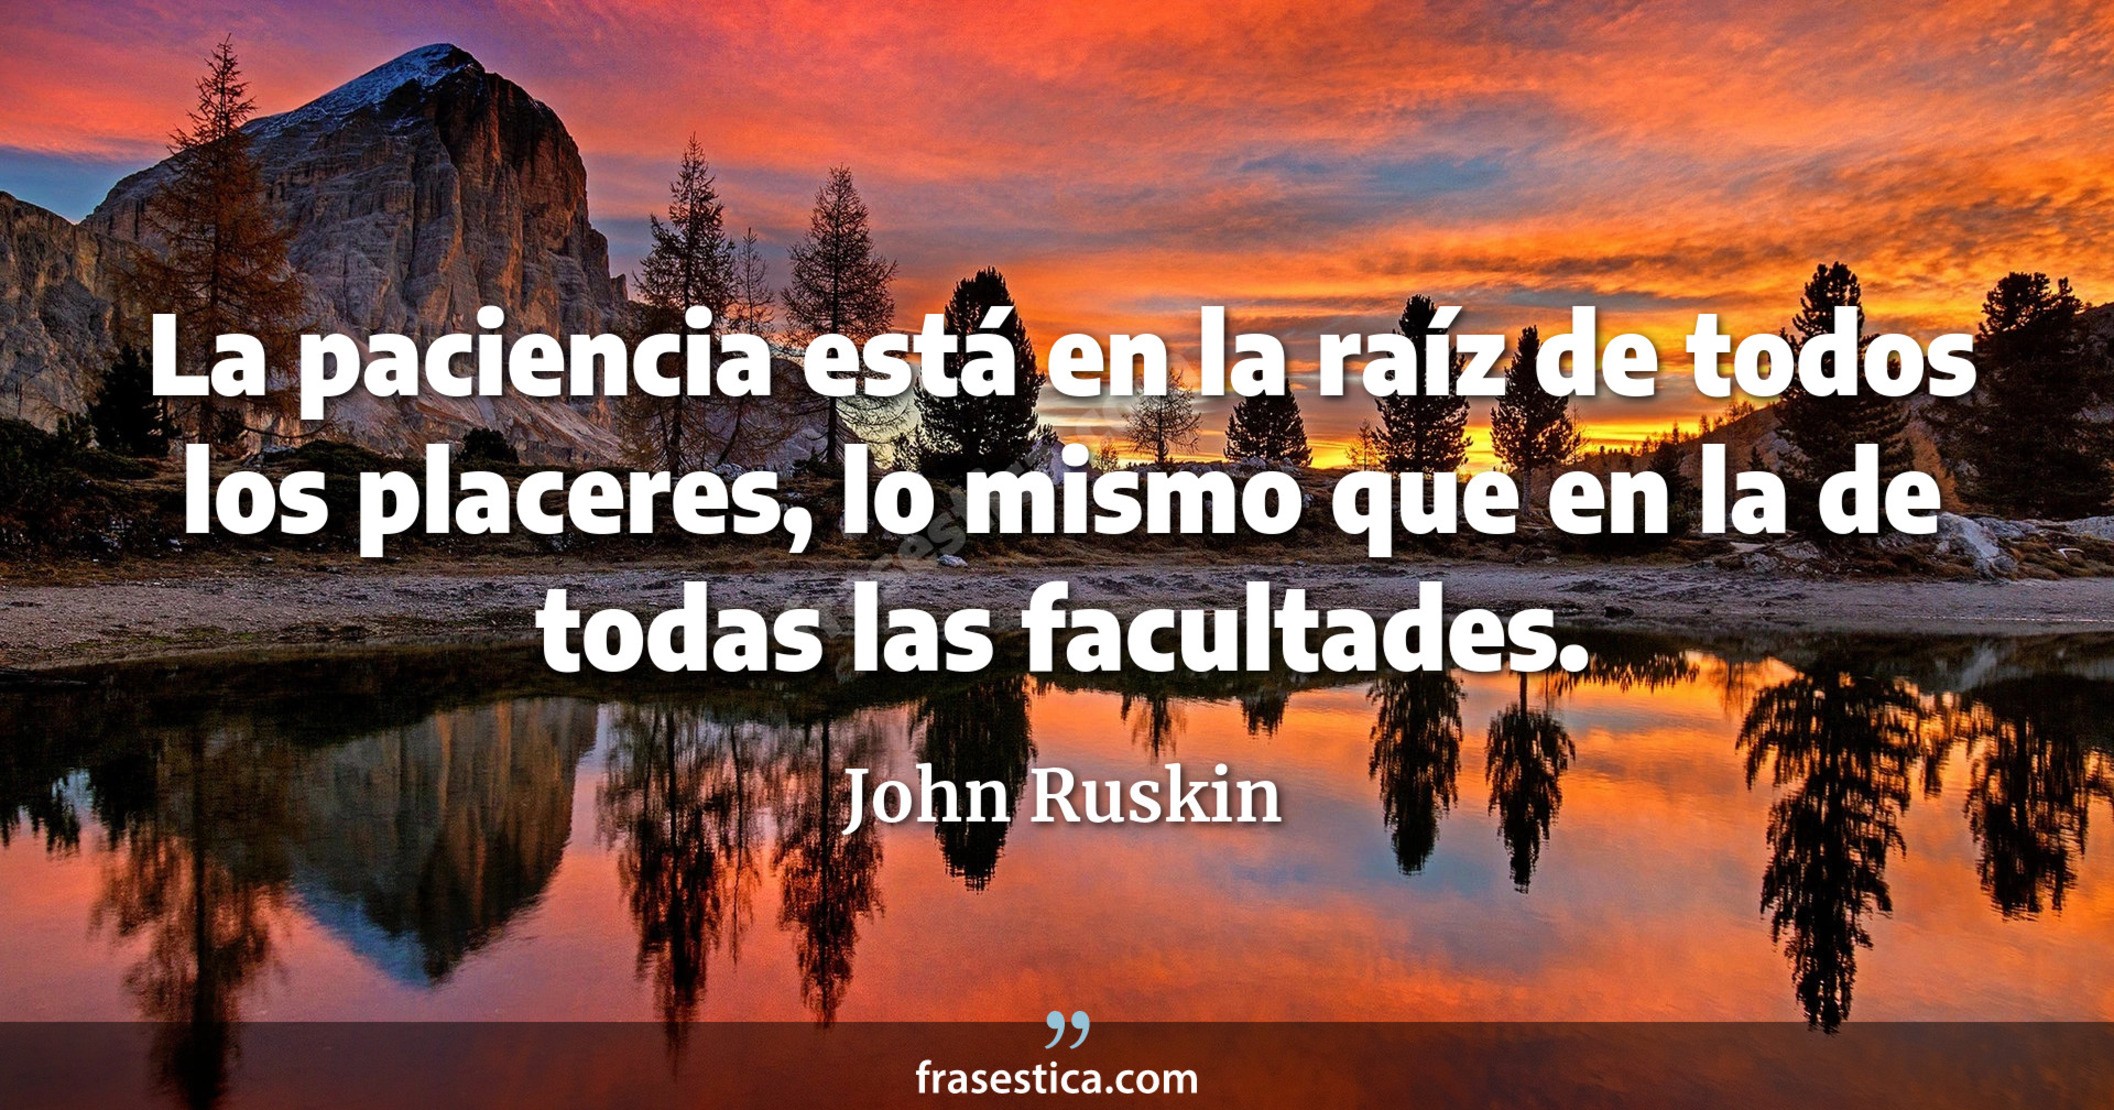 La paciencia está en la raíz de todos los placeres, lo mismo que en la de todas las facultades. - John Ruskin